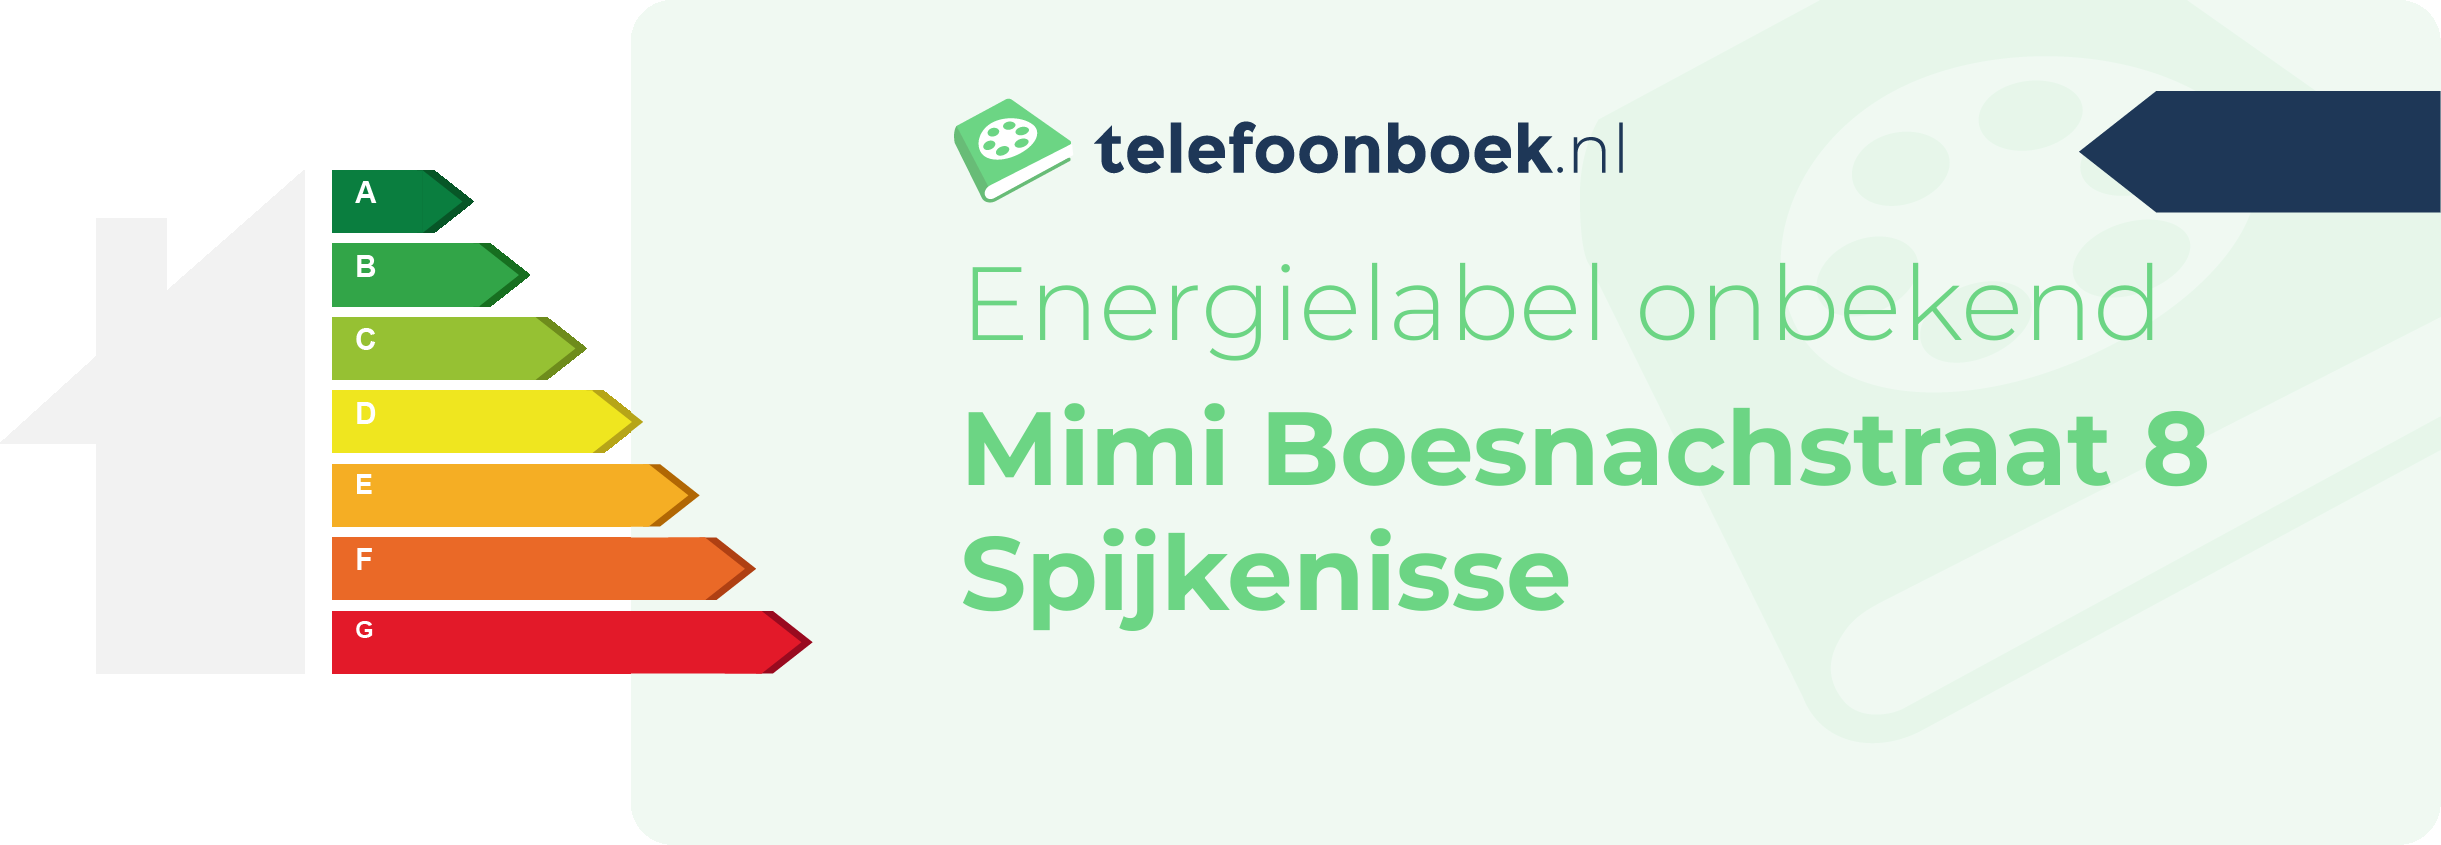 Energielabel Mimi Boesnachstraat 8 Spijkenisse